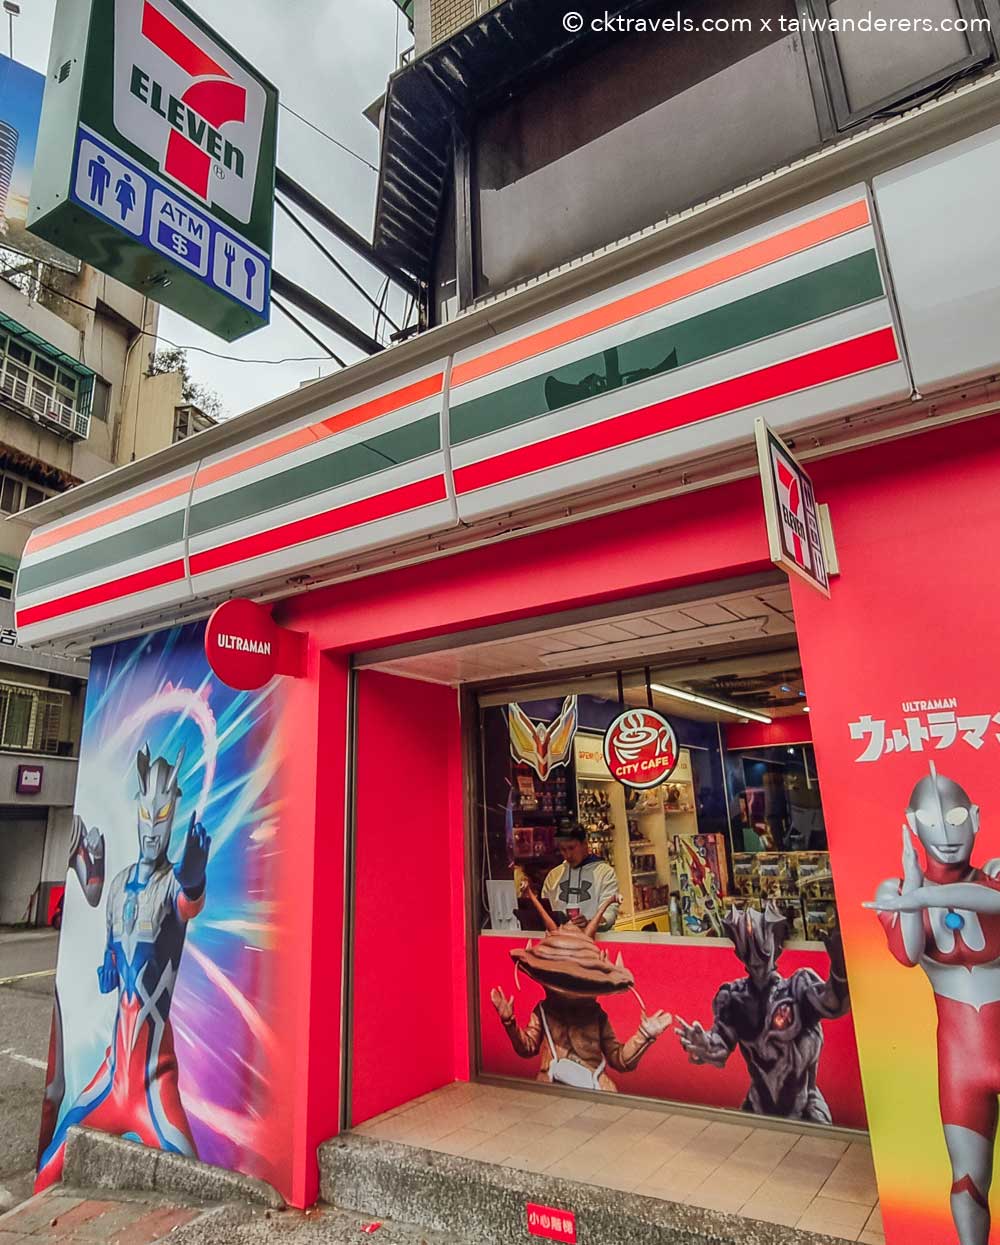 Ultraman themed 7-Eleven Taipei Taiwan